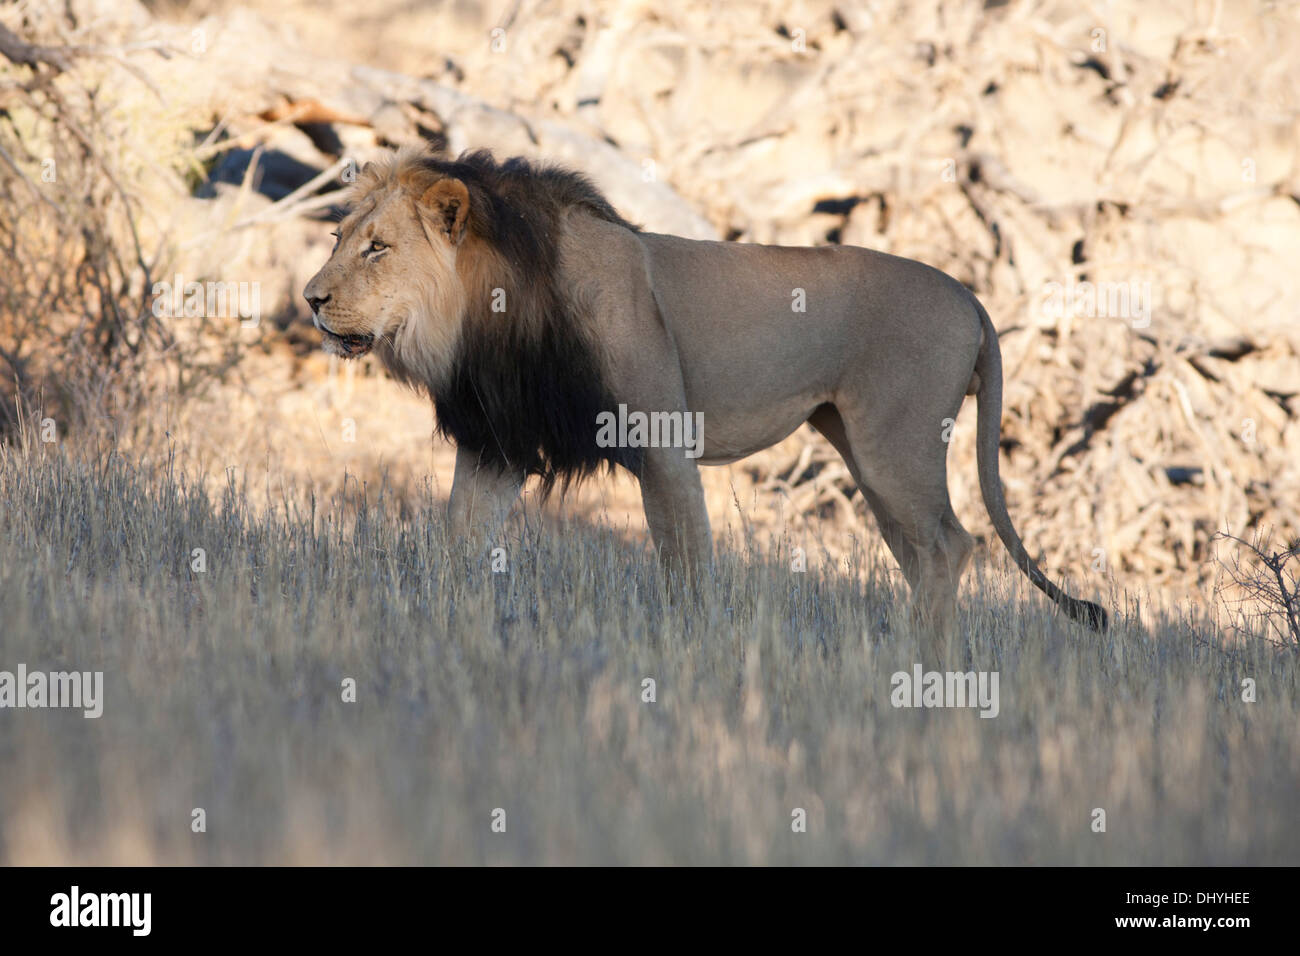 Black-maned African Lion walking in the Kalahari desert Stock Photo